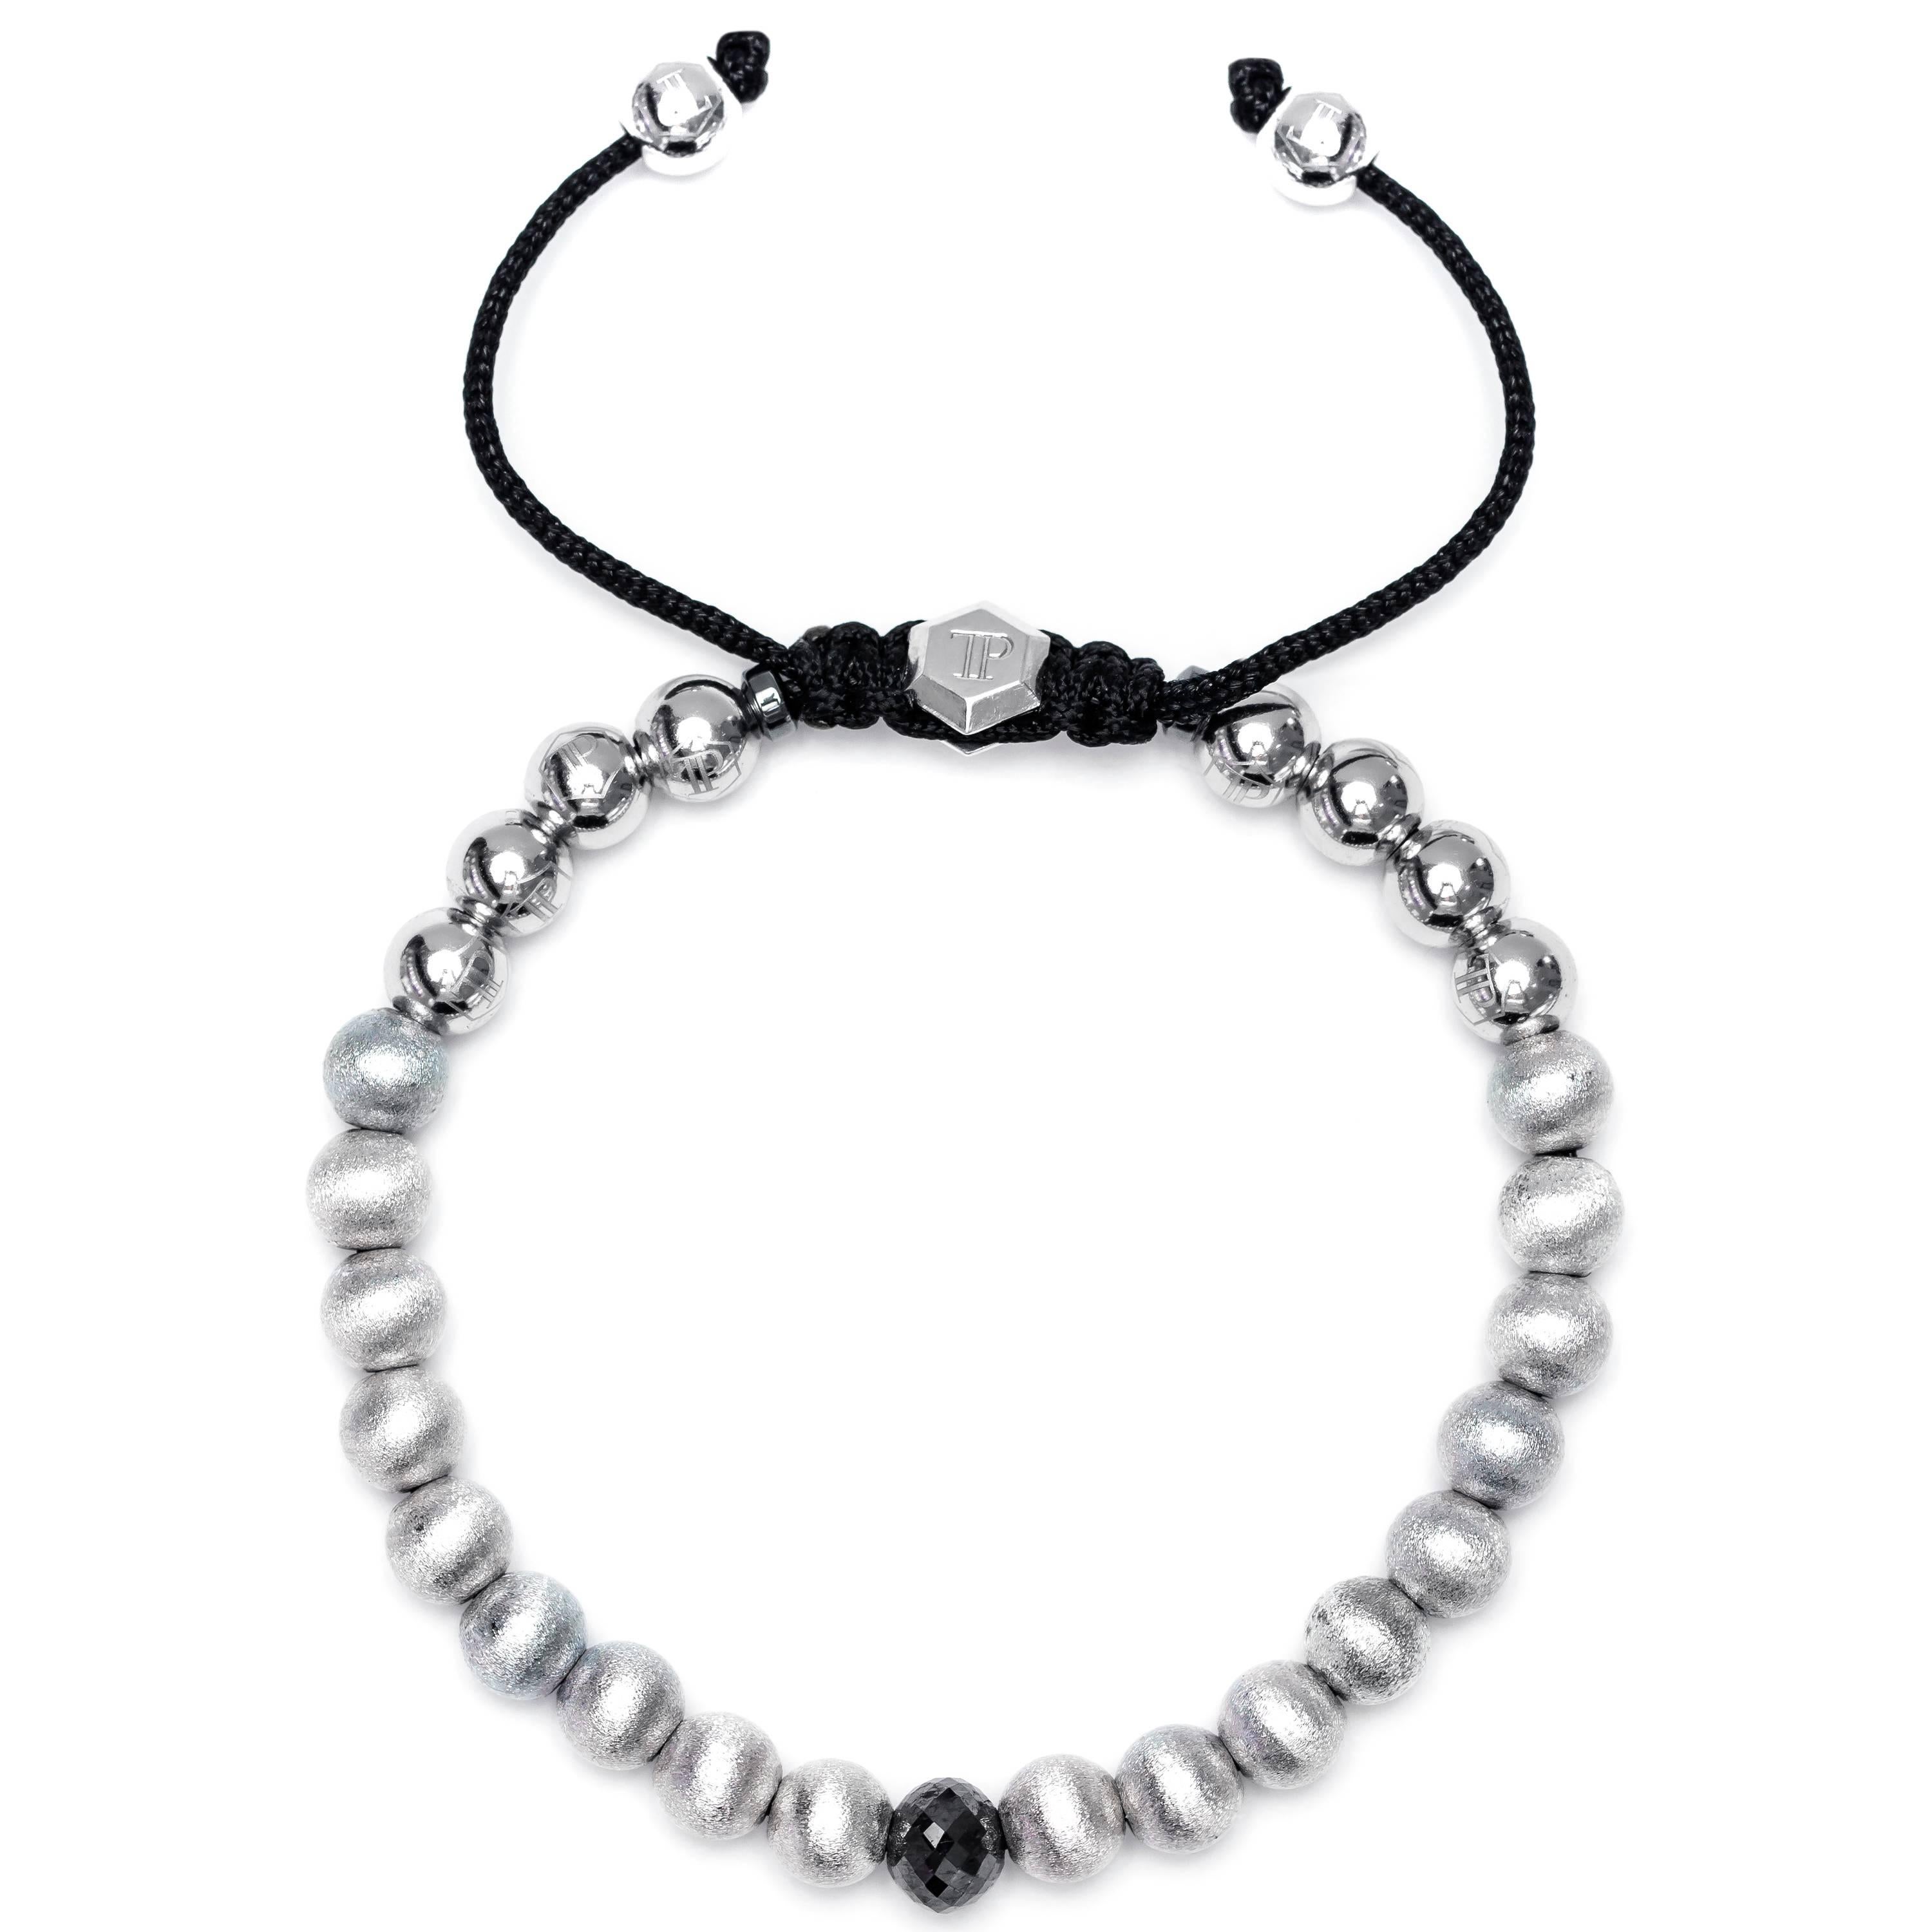 Dieses auf Bestellung gefertigte Armband aus Edelstahl und Silber mit einem schwarzen Diamanten von 1,63 Karat besteht aus 18 satinierten Perlen, 8 Edelstahlperlen und zwei Magnetitringen mit einem silbernen Sechseck-Logo von Tresor Paris. Größe